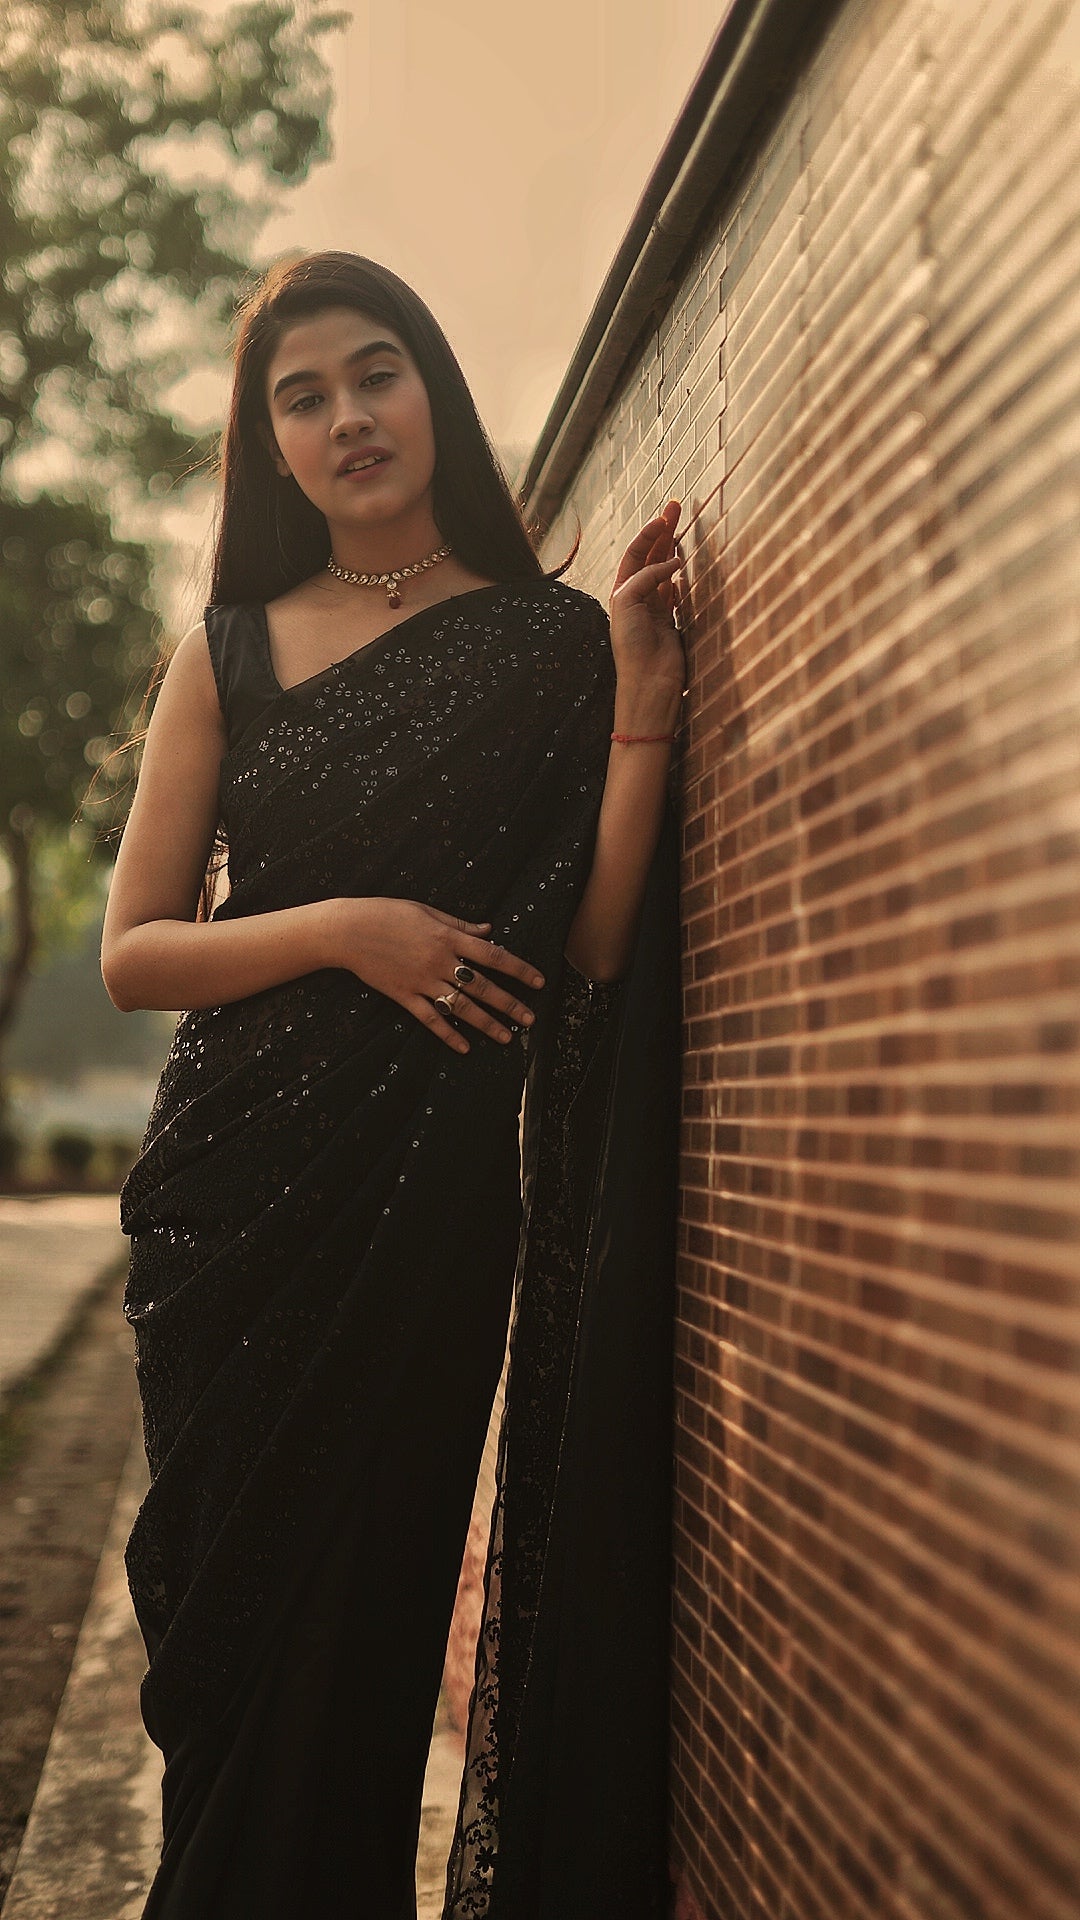 Pin by gayatri palleti on indian | Saree models, Saree photoshoot, Indian  beauty saree